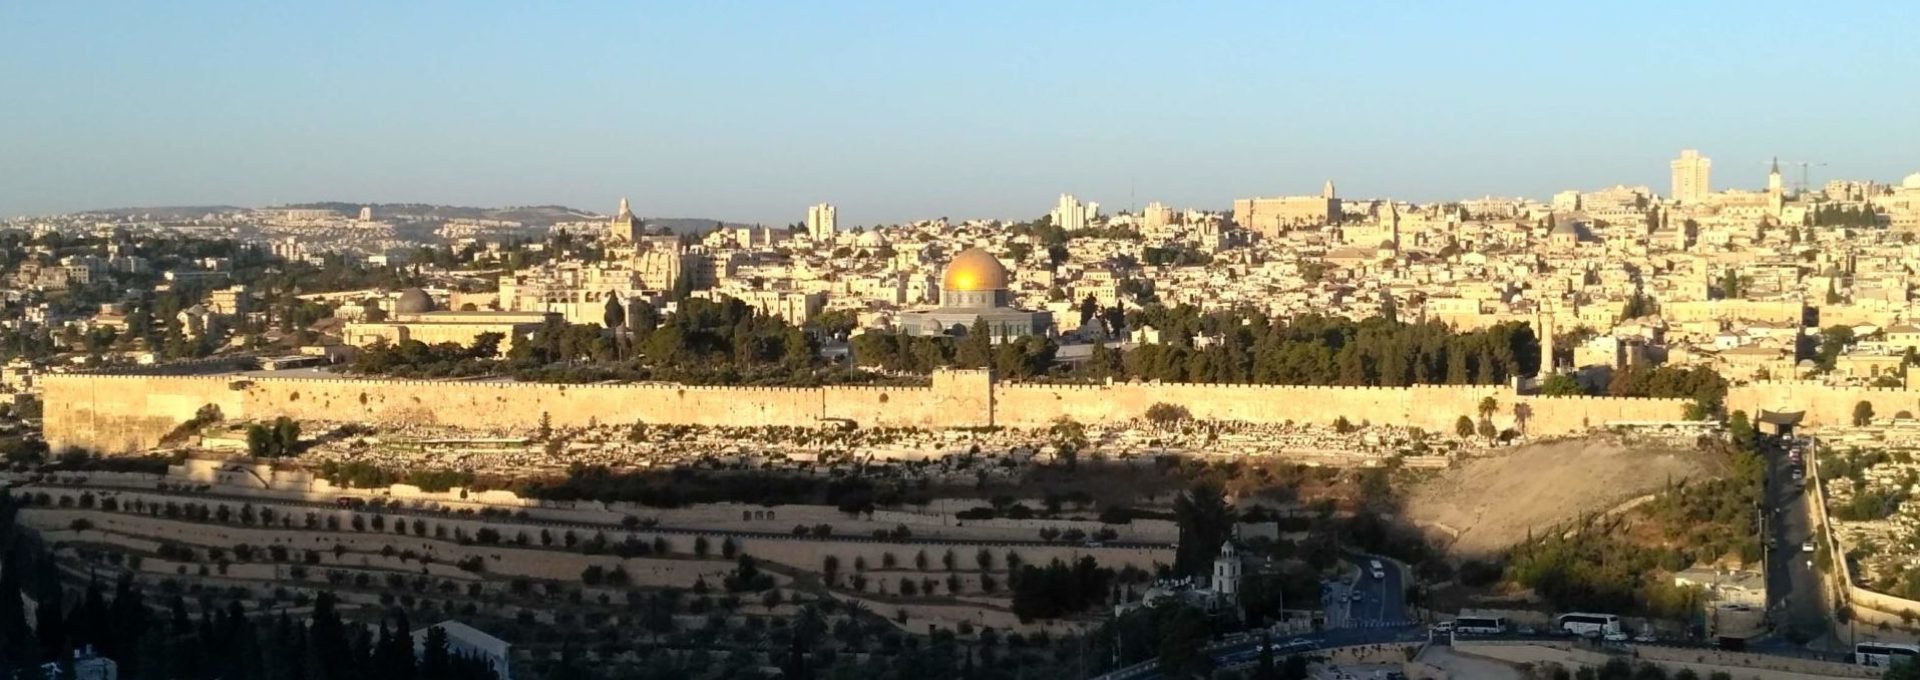 Inspiration Tours - Jerusalem - Holy Land